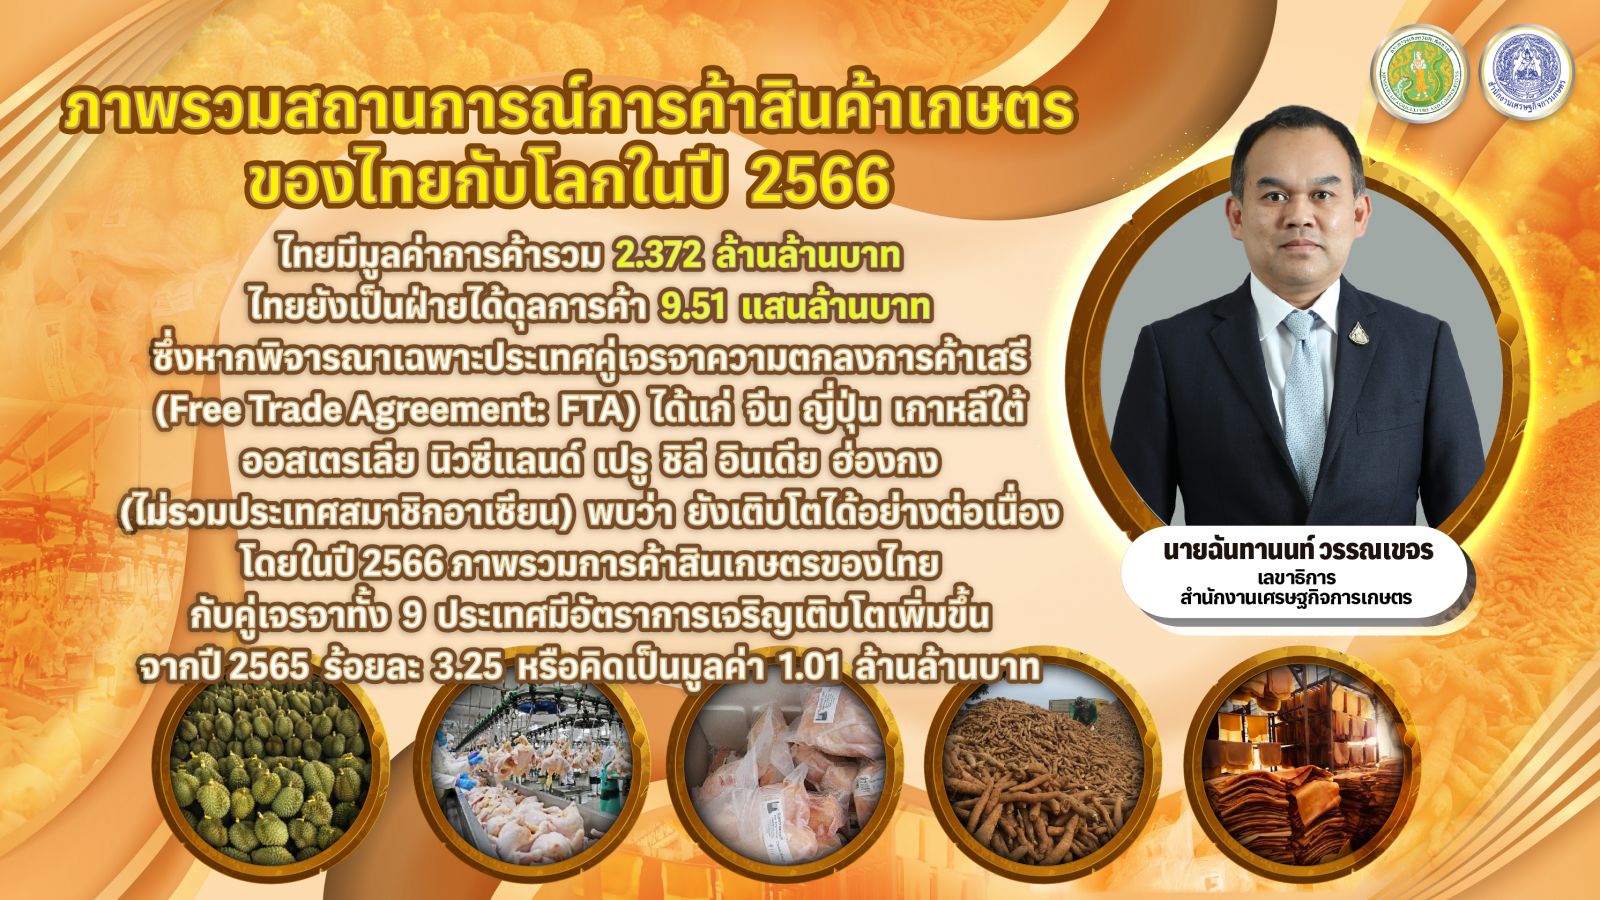 ส่งออกสินค้าเกษตรไทย ยังขยายตัวสวย สศก.โชว์ตัวเลข ปี 66 เกินดุลกว่า 5 แสนล้าน ภายใต้ความตกลง FTA